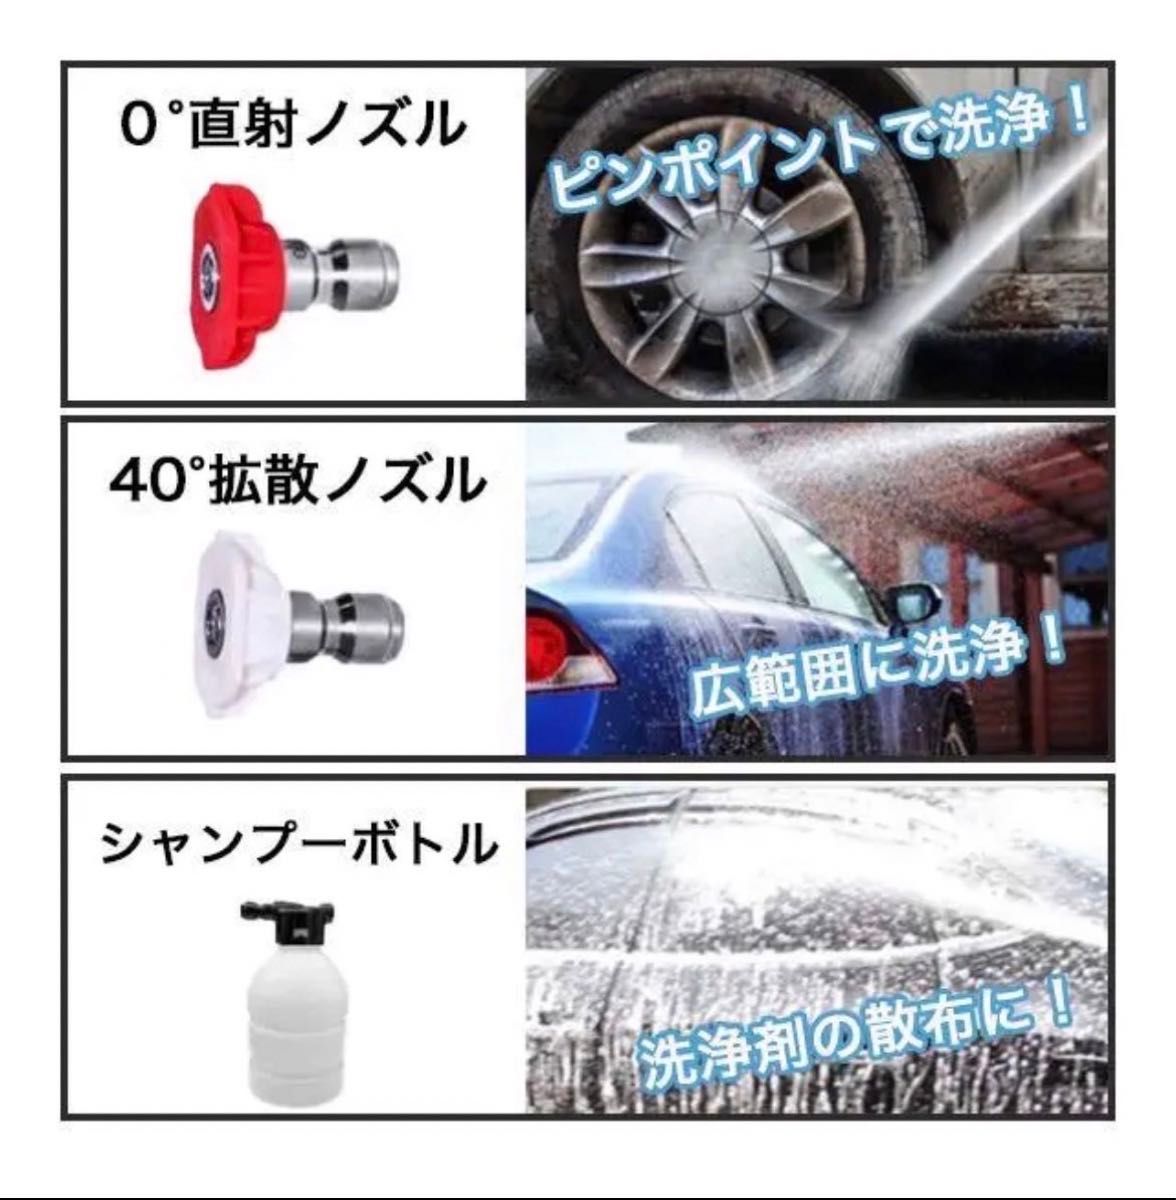 新製品 高圧洗浄機 コードレス 充電式 マキタ makita  洗車  掃除